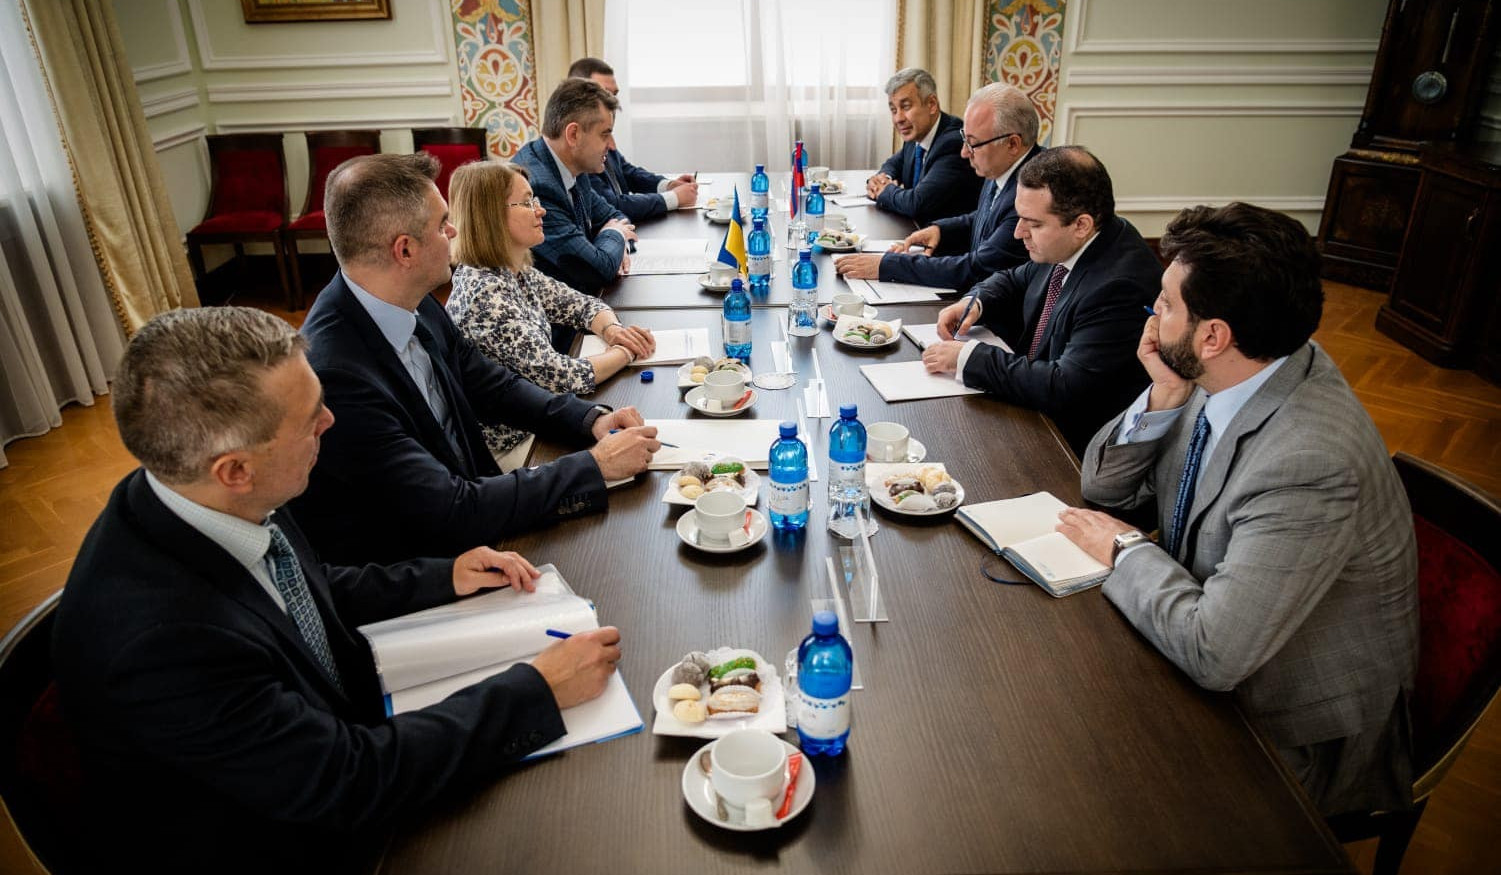 ՀՀ և Ուկրաինայի ԱԳ նախարարությունների միջև խորհրդակցությունների ընթացքում քննարկվել են երկկողմ քաղաքական օրակարգի հարցերի լայն շրջանակ